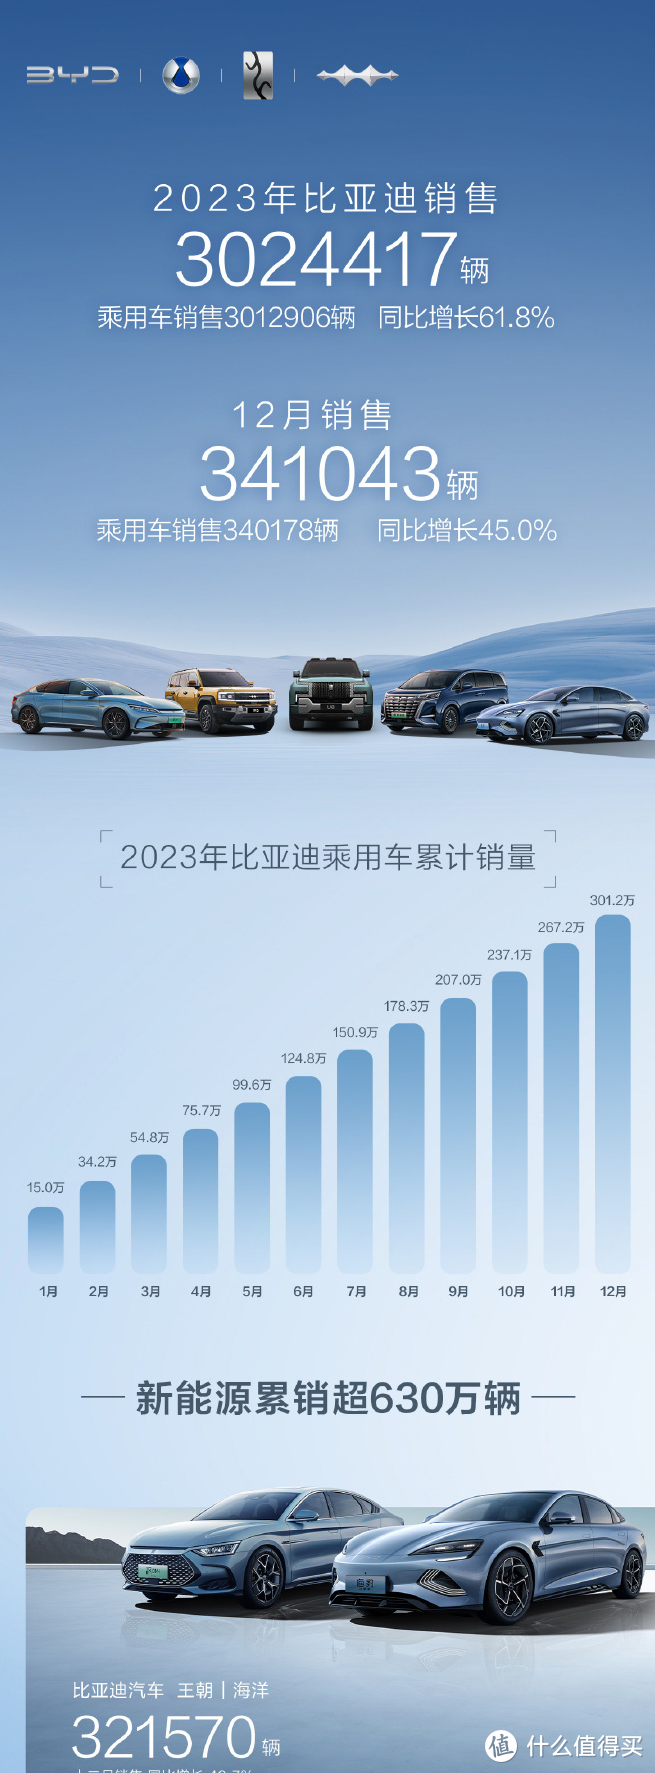 取代特斯拉成全球第一电动车企，比亚迪2023年度销量超300万辆  封神榜第一 传奇仍将继续